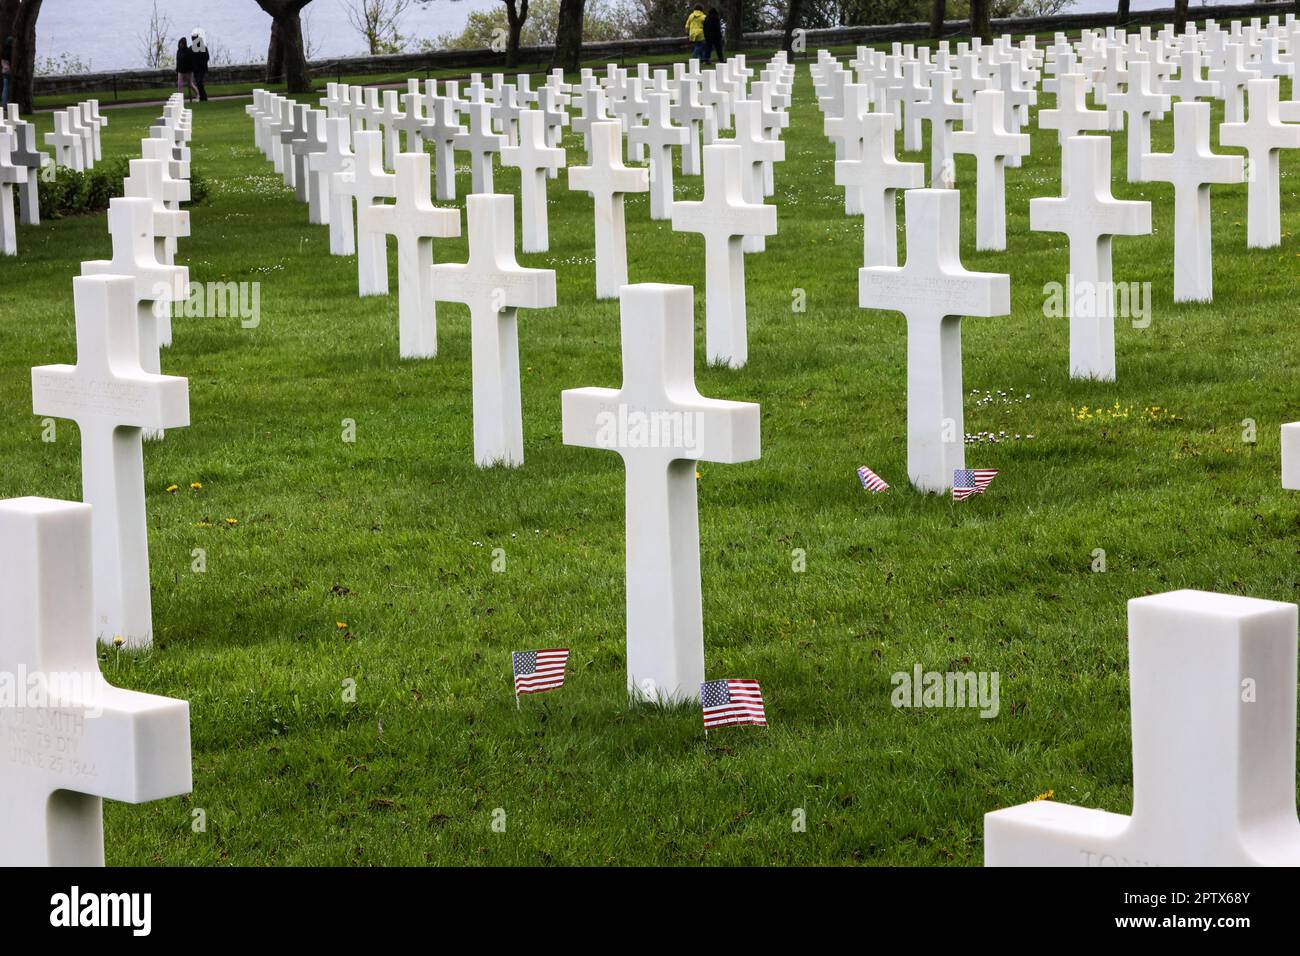 Der amerikanische Friedhof und das Denkmal der Normandie, der amerikanische Friedhof der Normandie, der amerikanische Friedhof, in, Frankreich, befindet sich, in, Colleville-sur-Mer, Normandie, gegründet von den USA Erste Armee am 8. Juni 1944 als erste, amerikanischer Friedhof, auf europäischem Boden, Im Zweiten Weltkrieg Der Friedhof erstreckt sich über 172,5 Hektar und beherbergt die Gräber von 9.386, militärisch Toten, von denen die meisten ihr Leben bei der Landung und den anschließenden Operationen verloren haben. Stockfoto